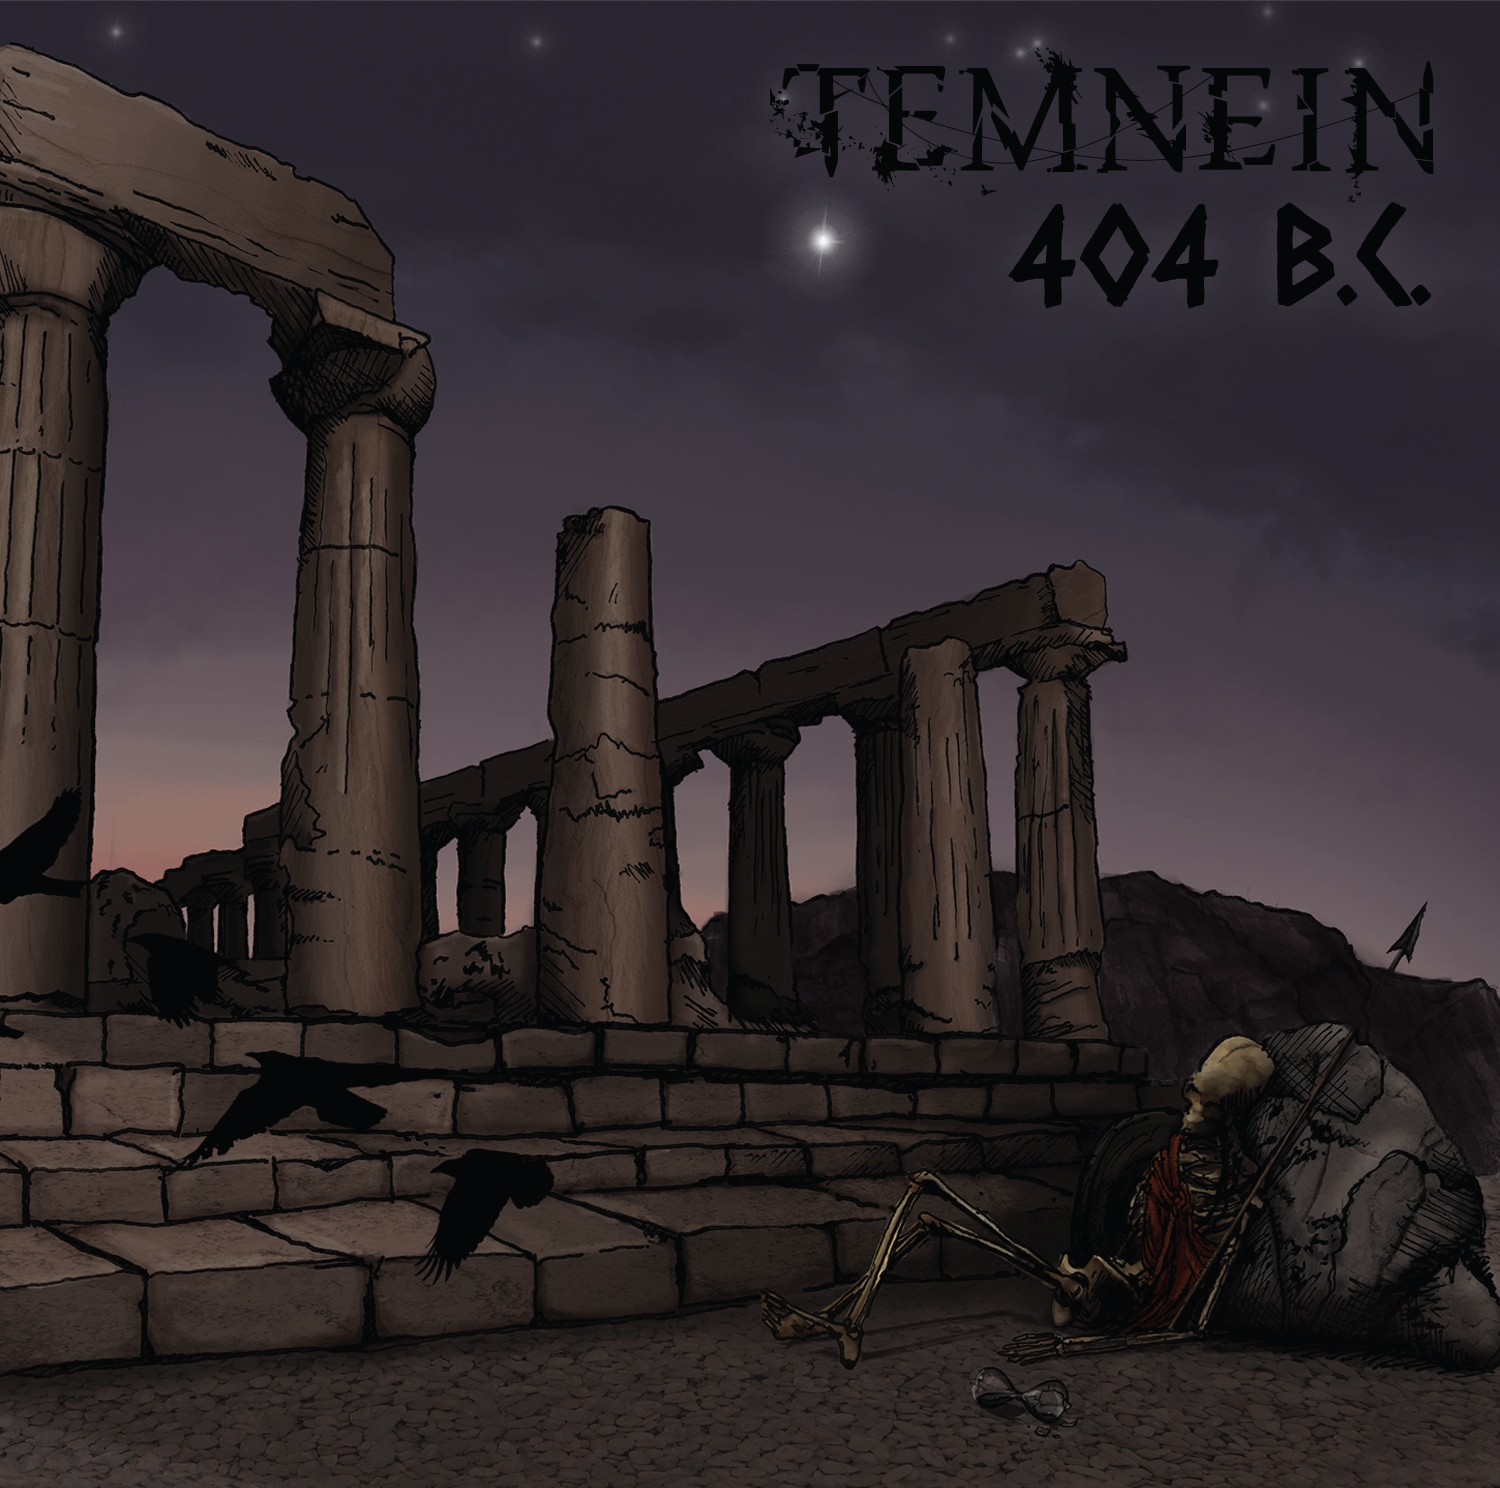 Рецензия: Temnein - 404 B.C. (2014)